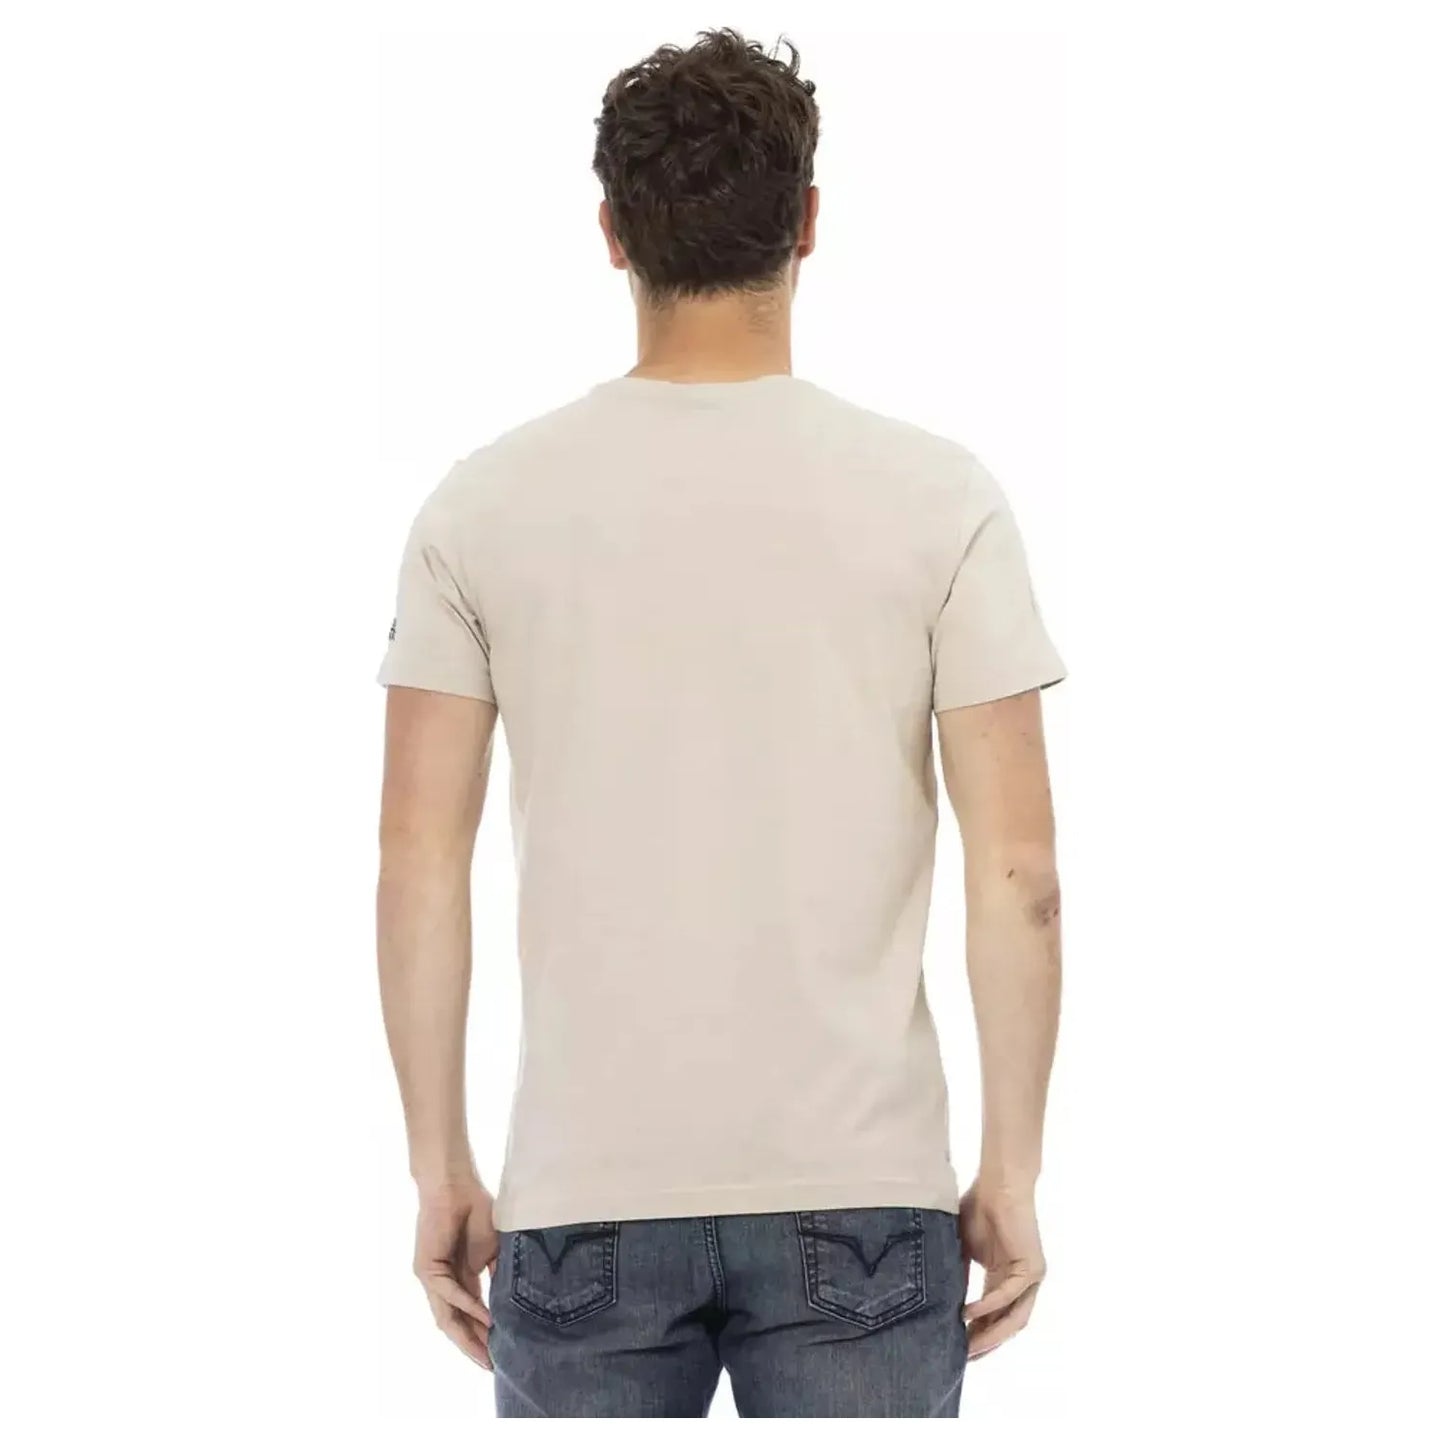 Trussardi Action Beige Round Neck Tee with Front Print beige-cotton-t-shirt-8